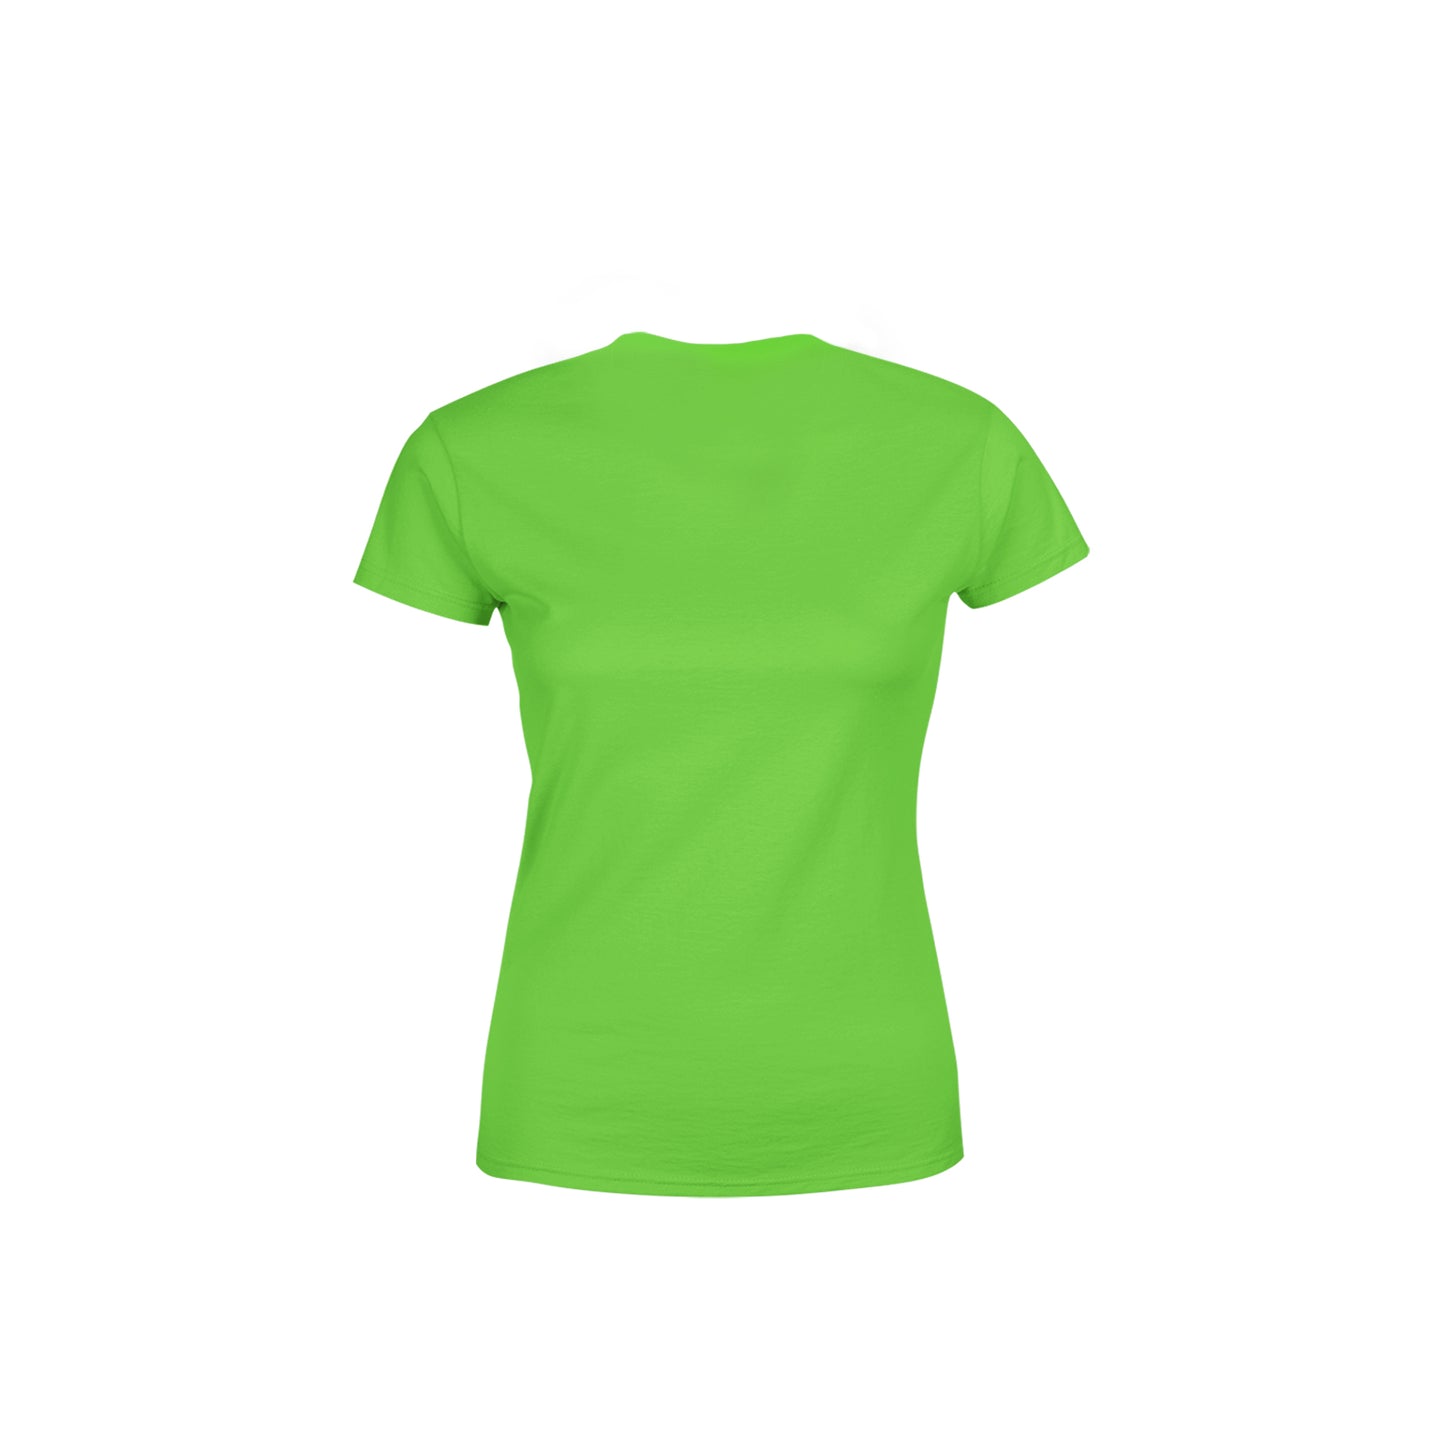 56 Number Women's T-Shirt (Liril Green)